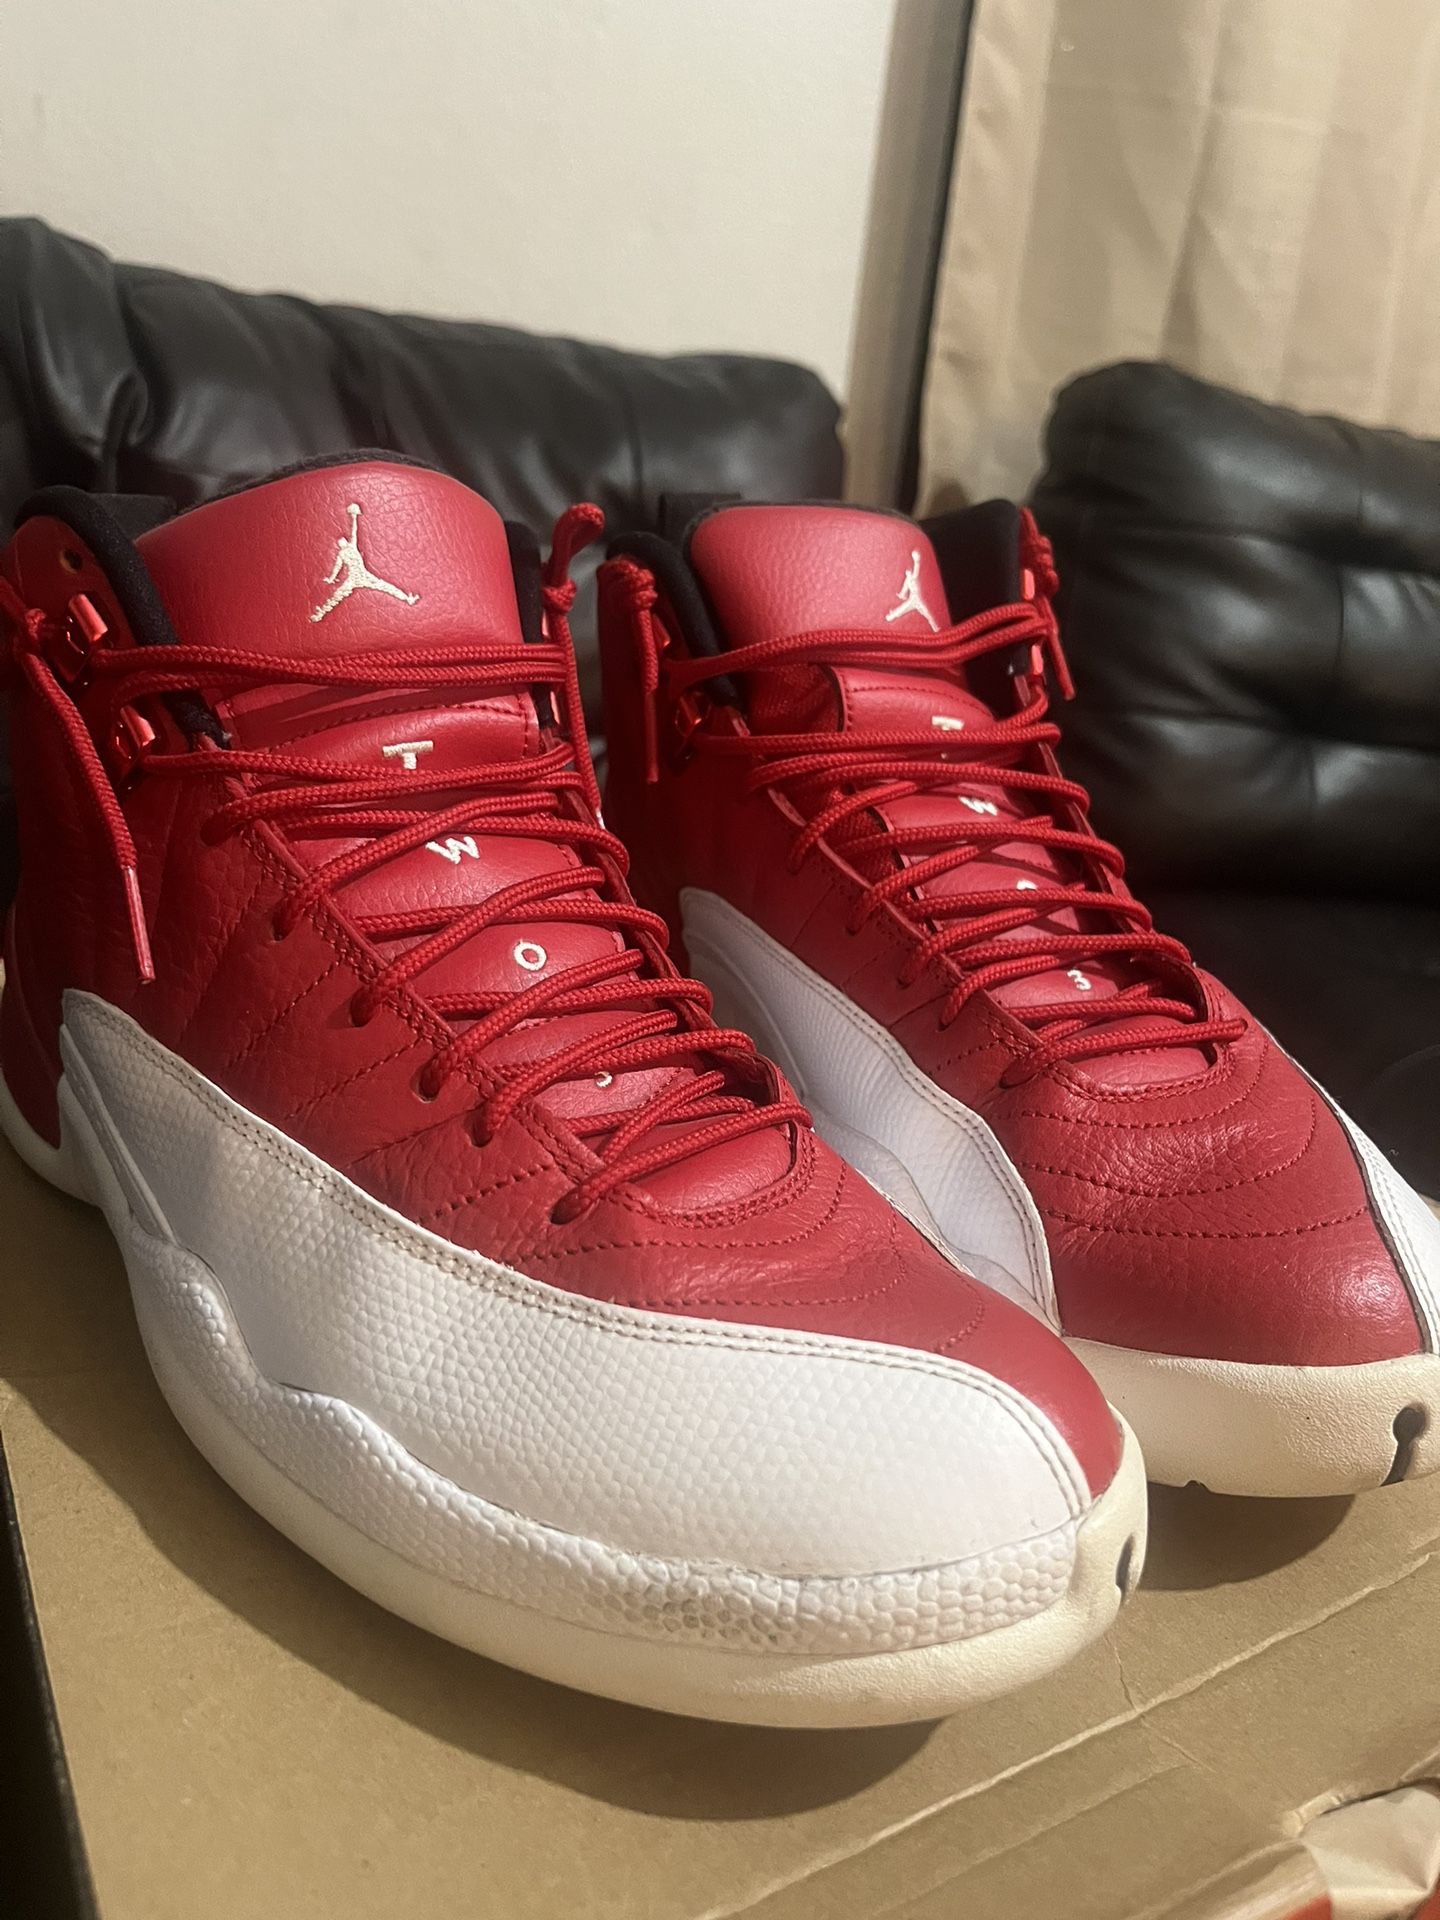 Jordan 12’s (Gym Red)